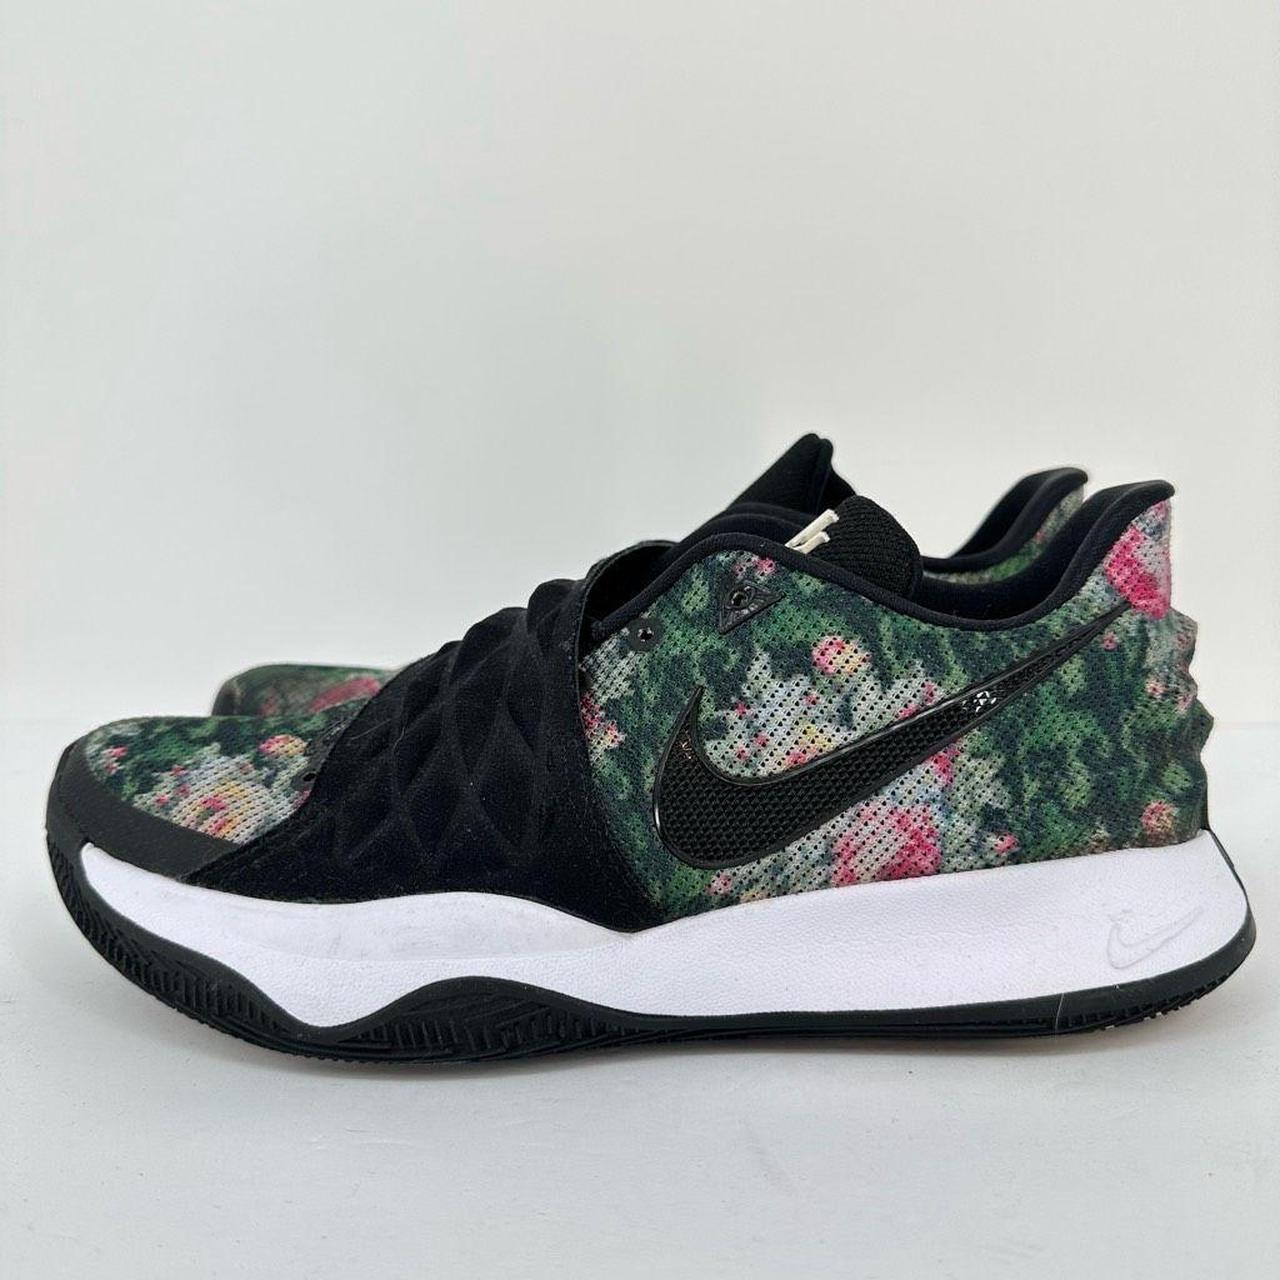 Reis geweld Verslinden Nike Kyrie Low Floral Sneakers Mens Size 9... - Depop